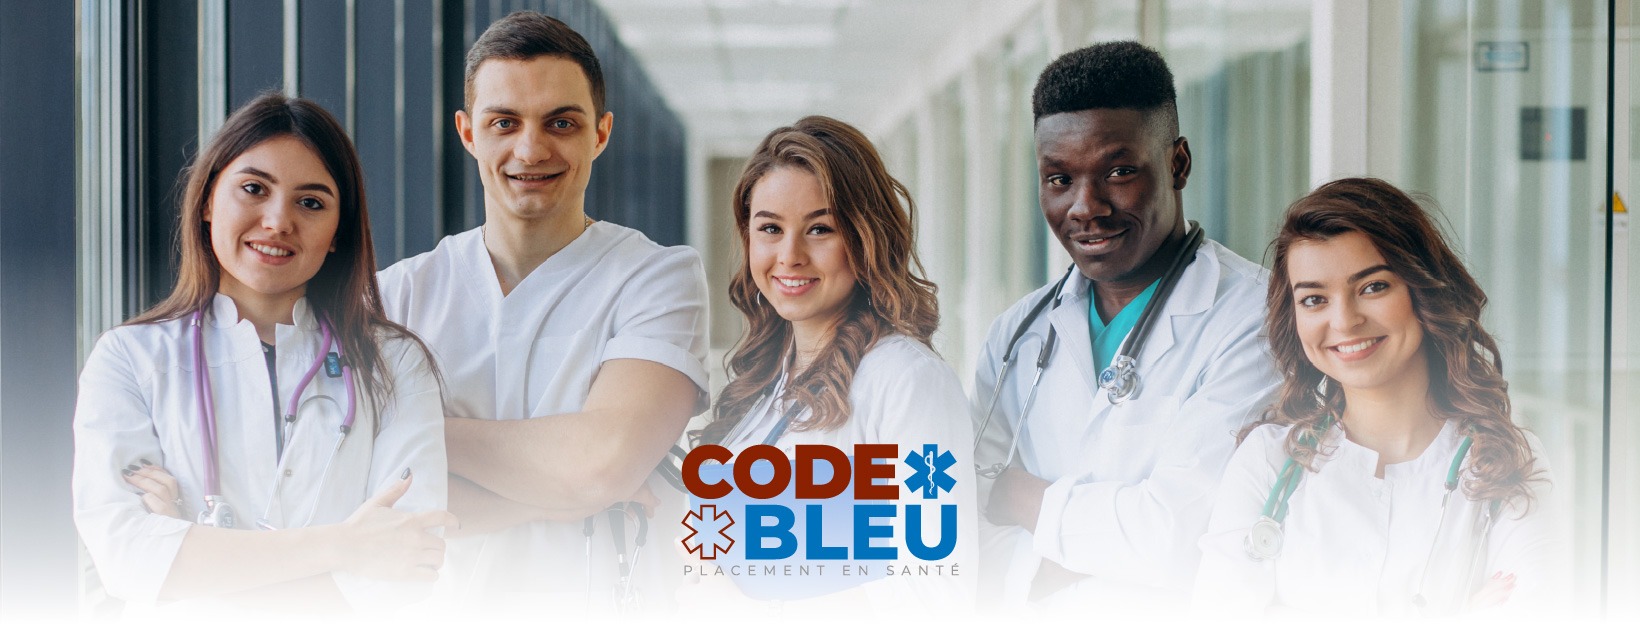 Mission de Code Bleu Placement en Santé